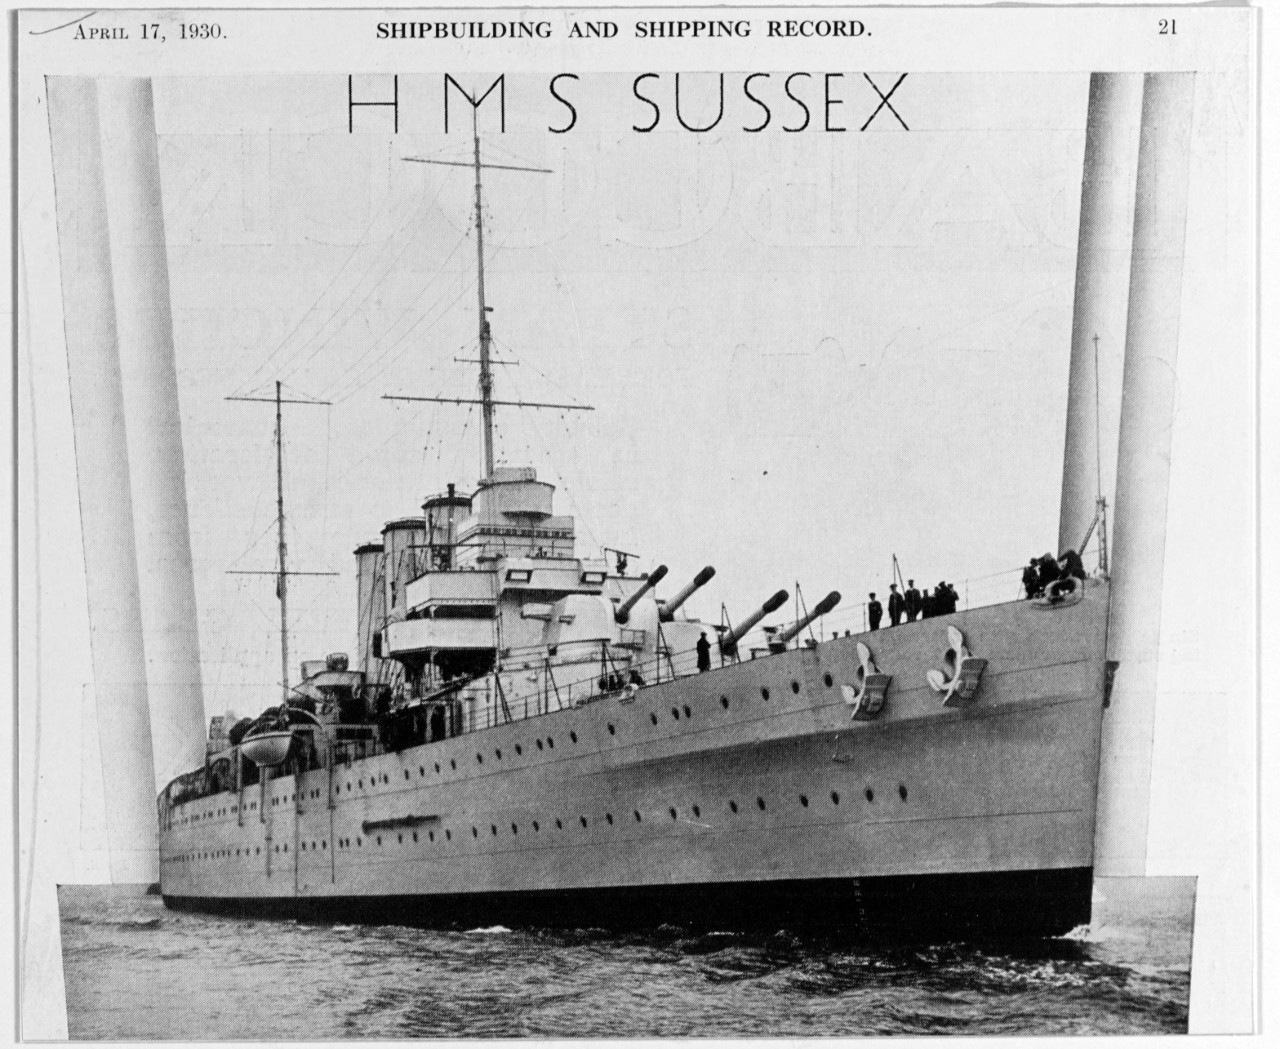 SUSSEX (British heavy cruiser, 1928-1950)